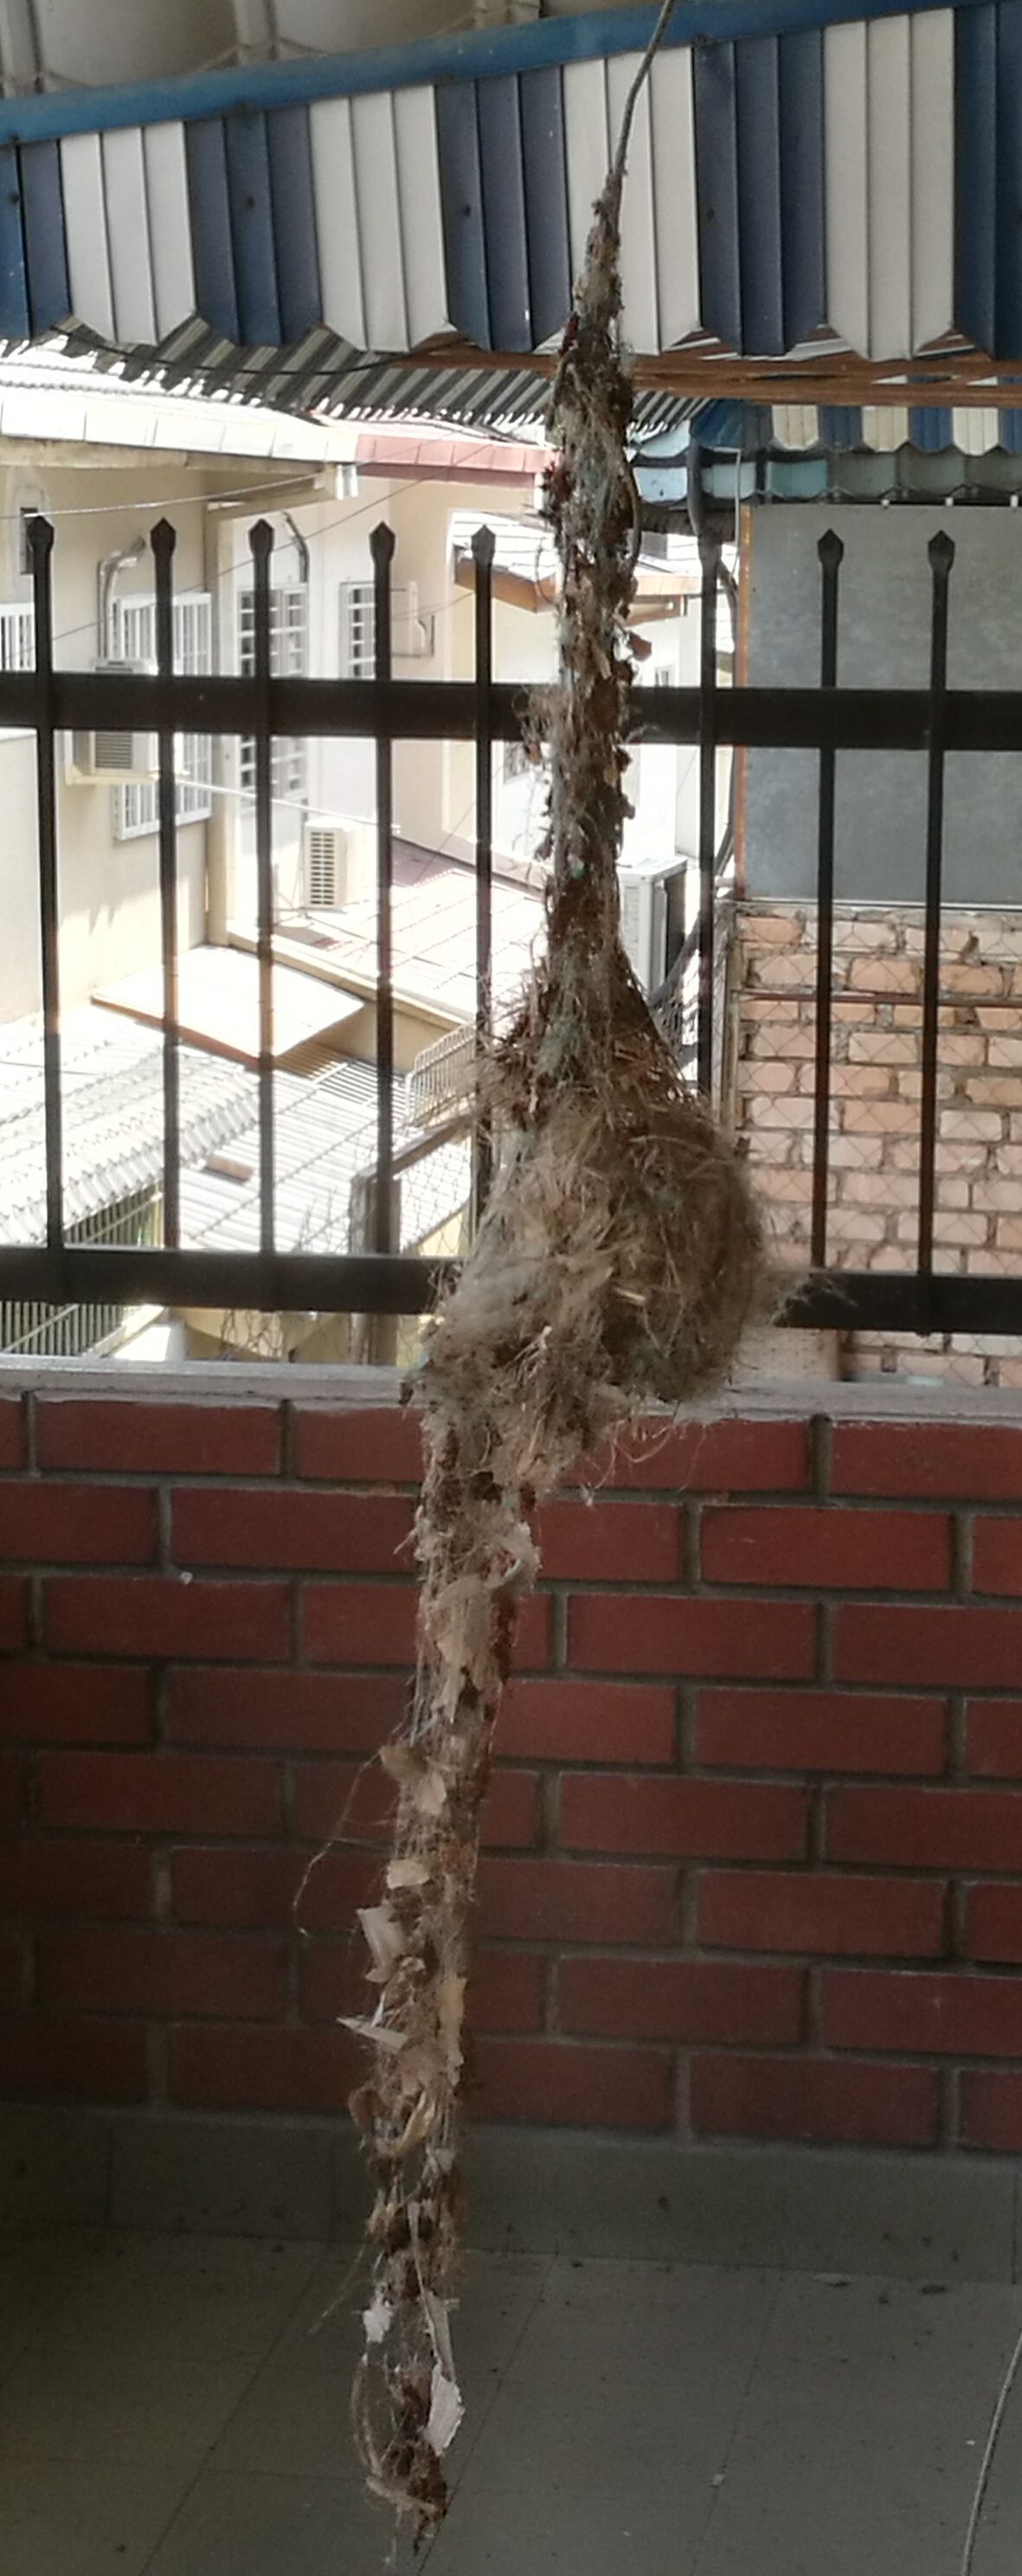 Urban nest